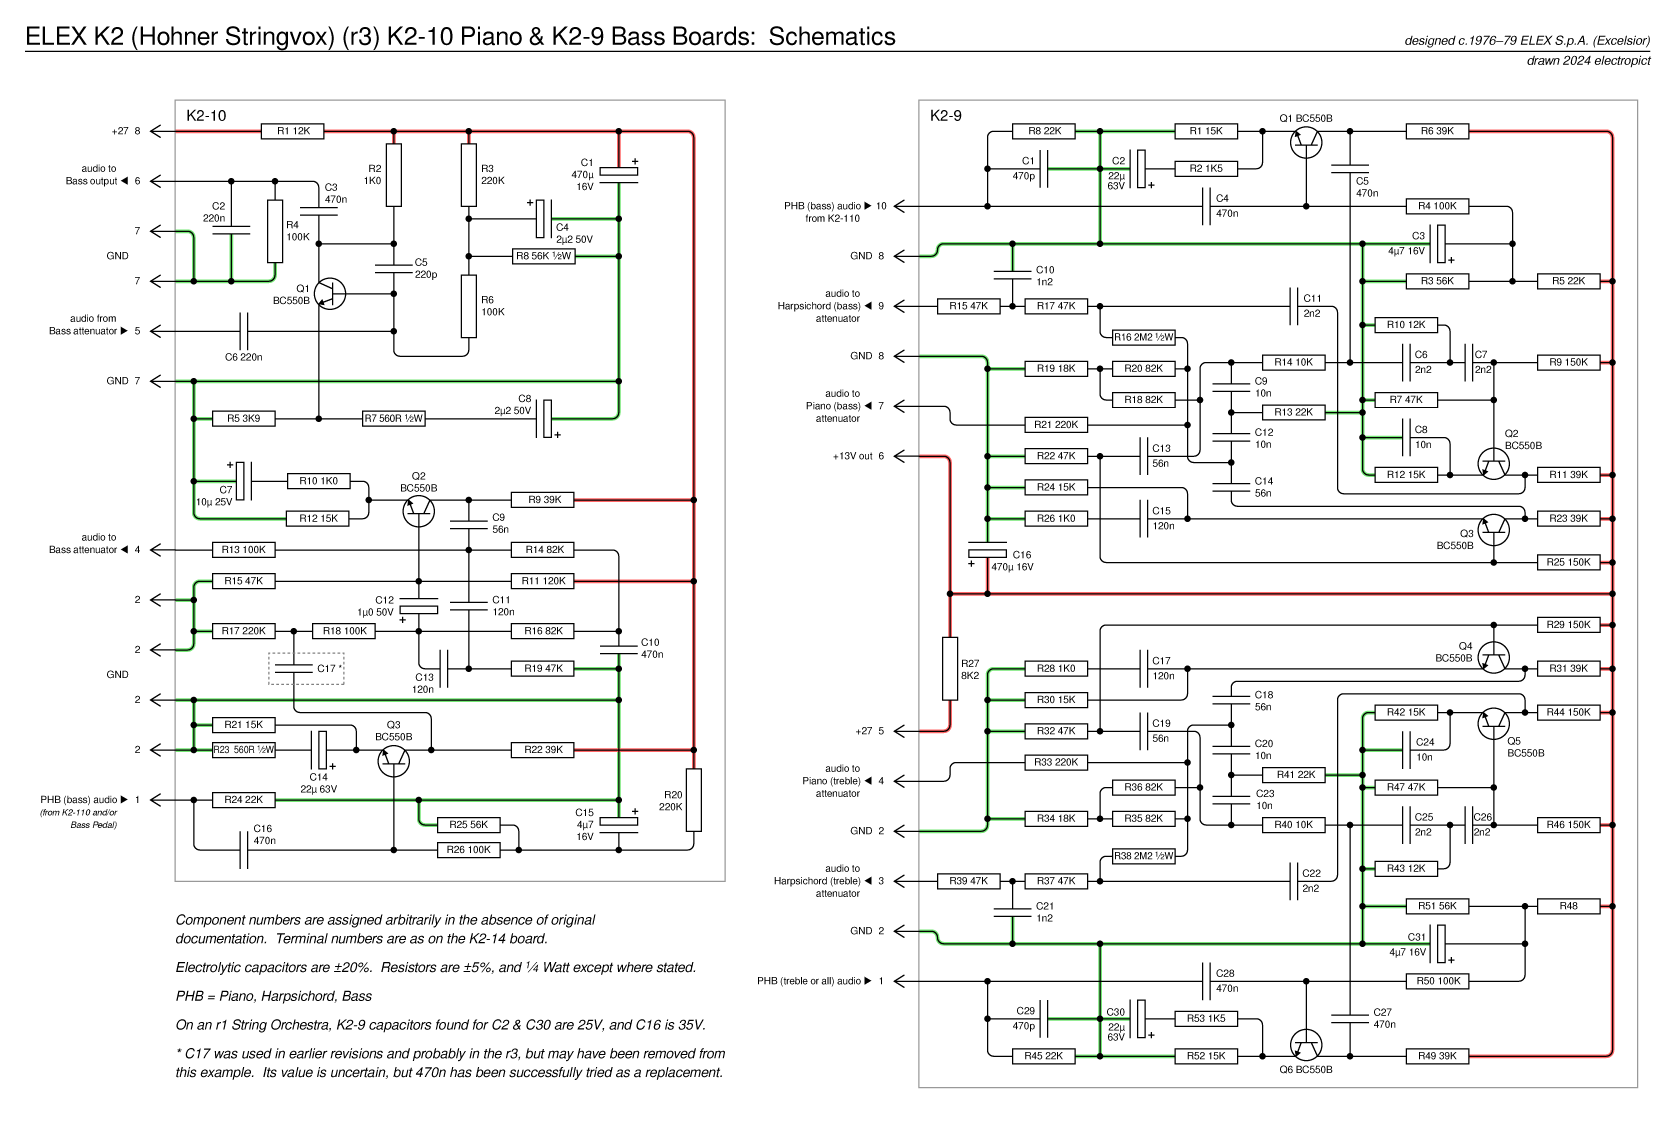 K2r3 K2-9 & K2-10 schematics